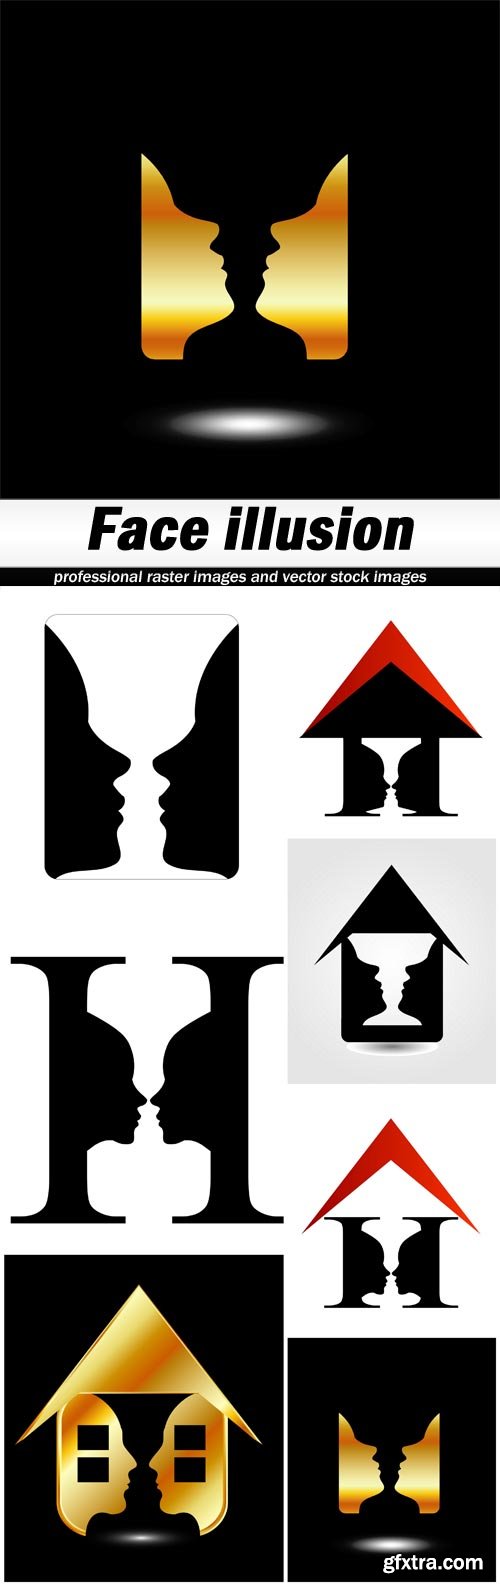 Face illusion - 7 UHQ JPEG